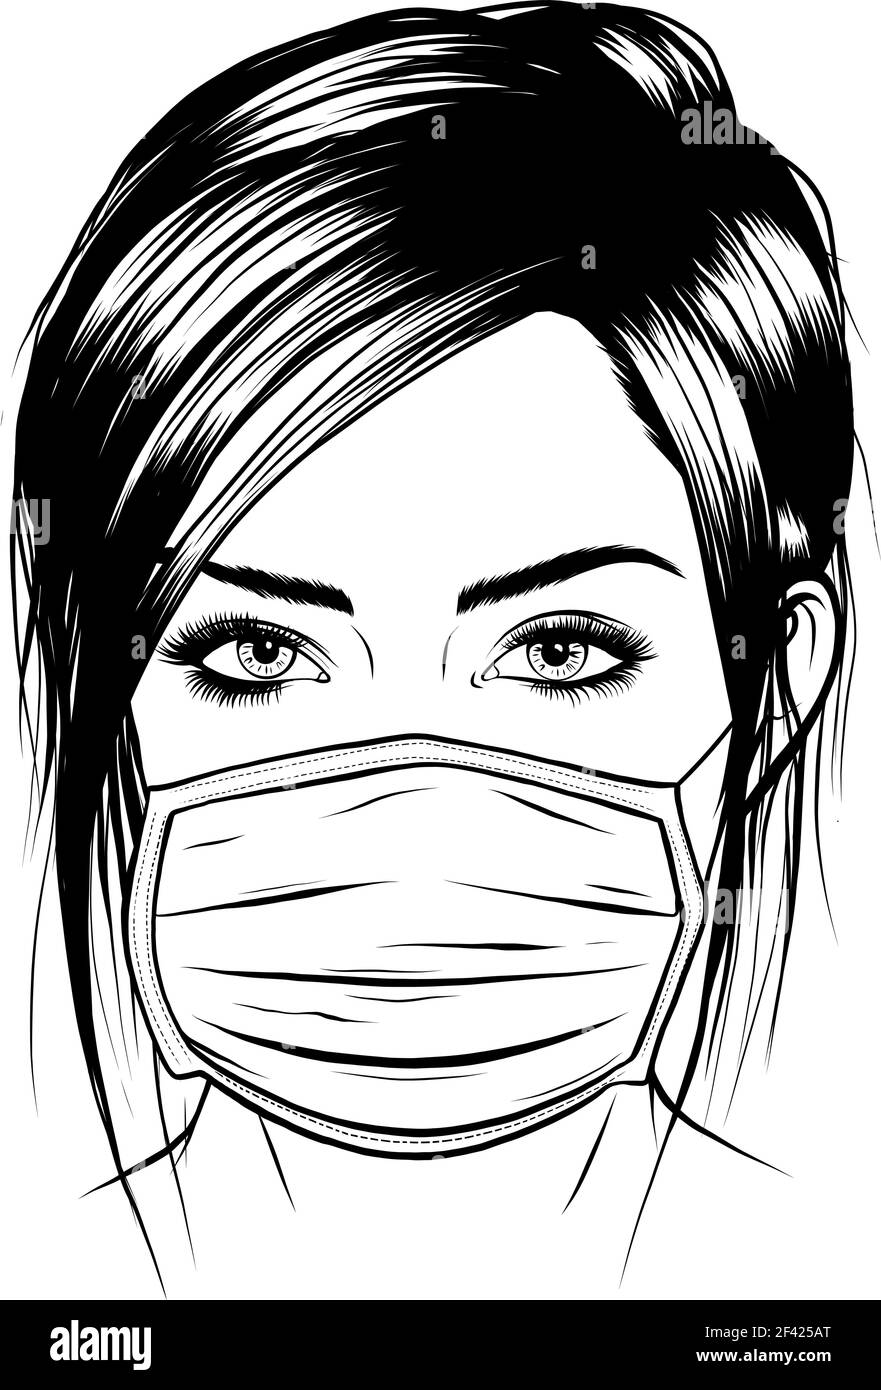 Zeichnen Sie in schwarz und weiß von Mädchen mit medizinischen  chirurgischen Gesichtsmaske. Vektorgrafik Stock-Vektorgrafik - Alamy